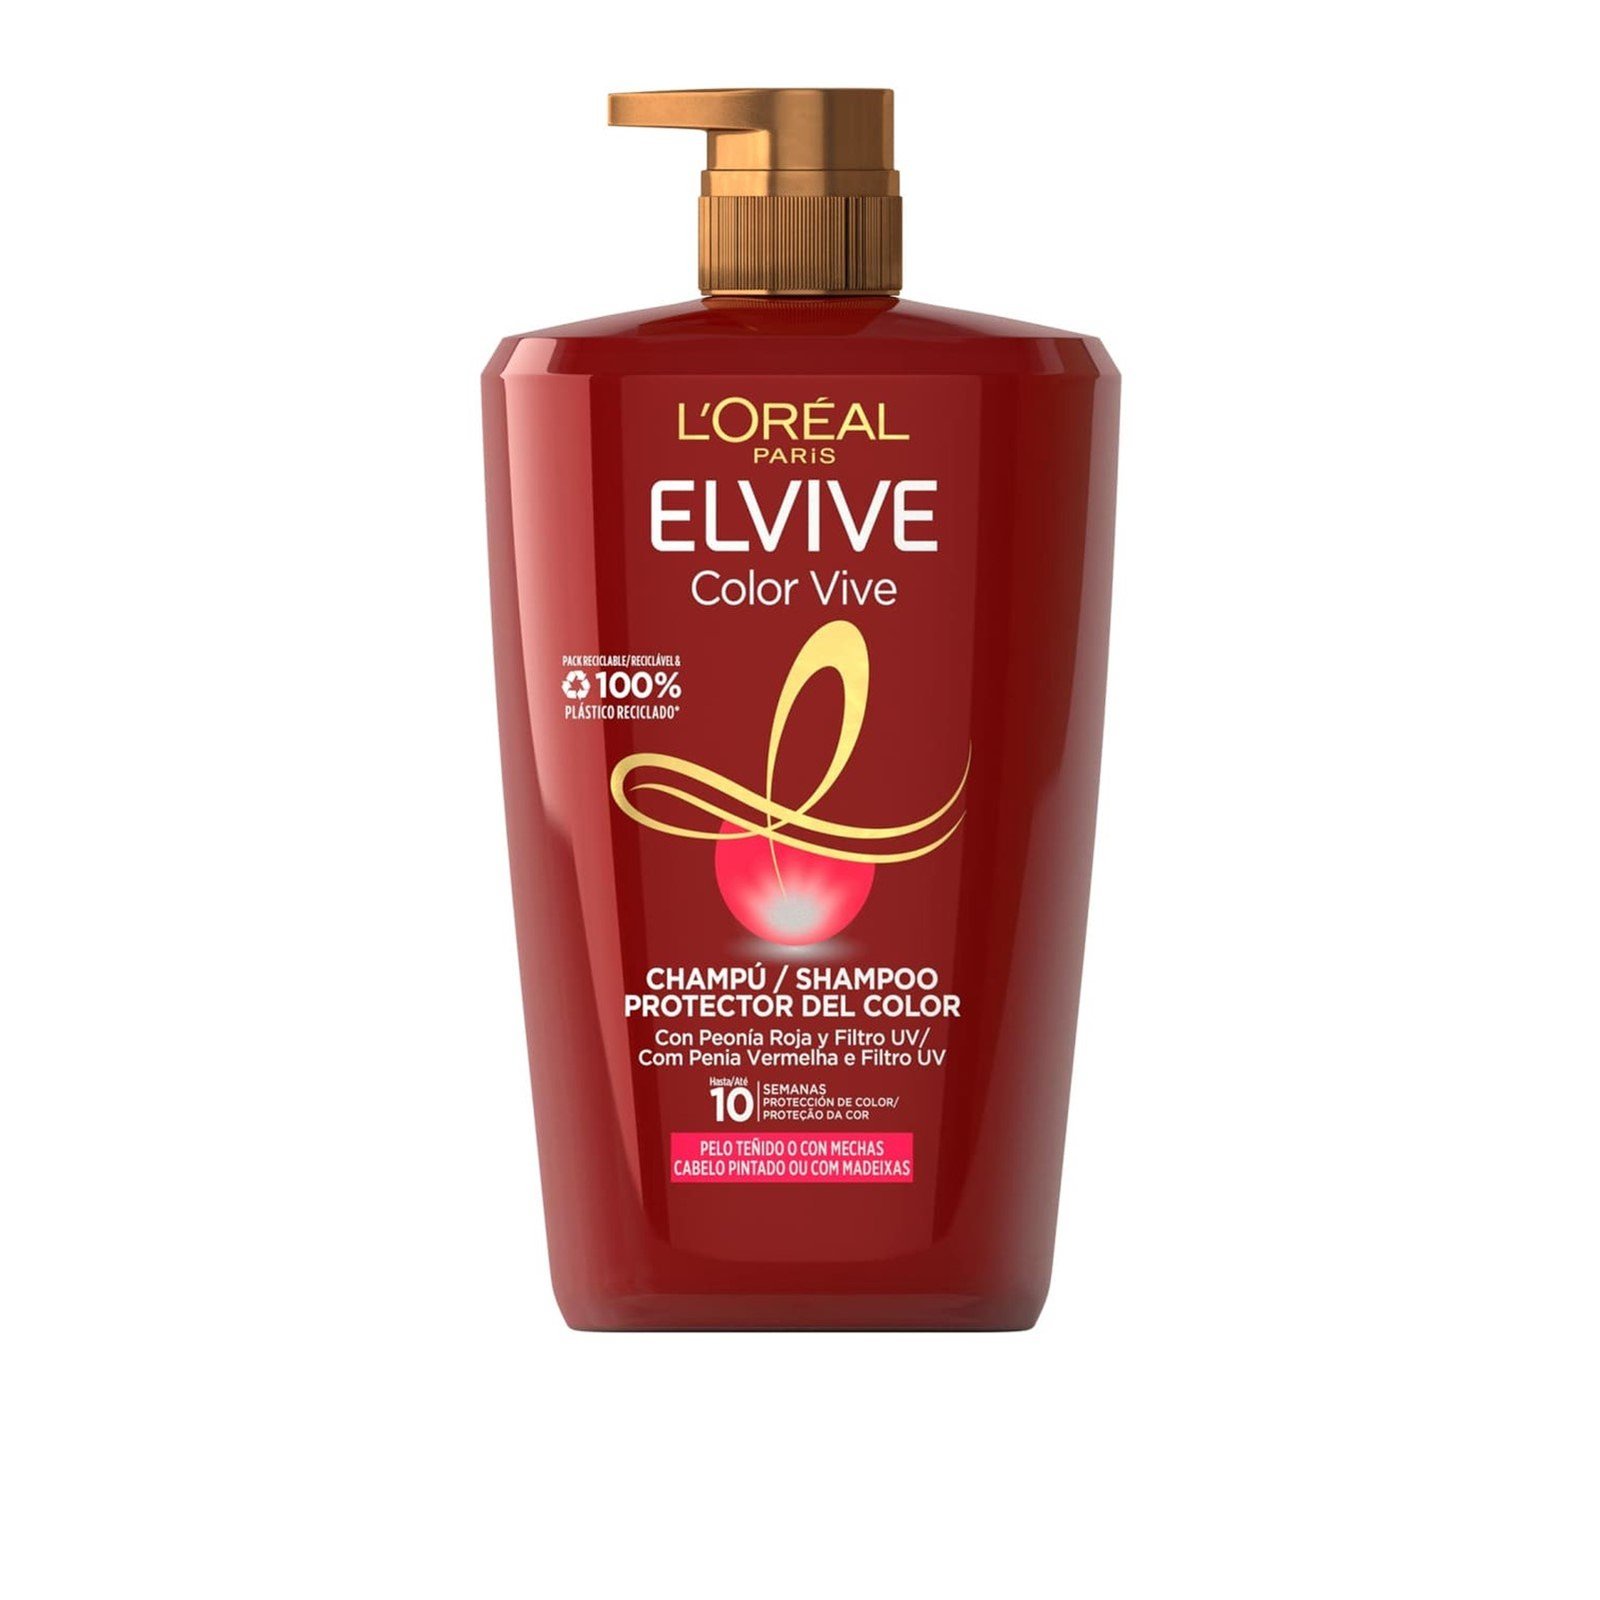 L'Oréal Paris Elvive Color Vive Shampoo 1L (33.8 fl oz)